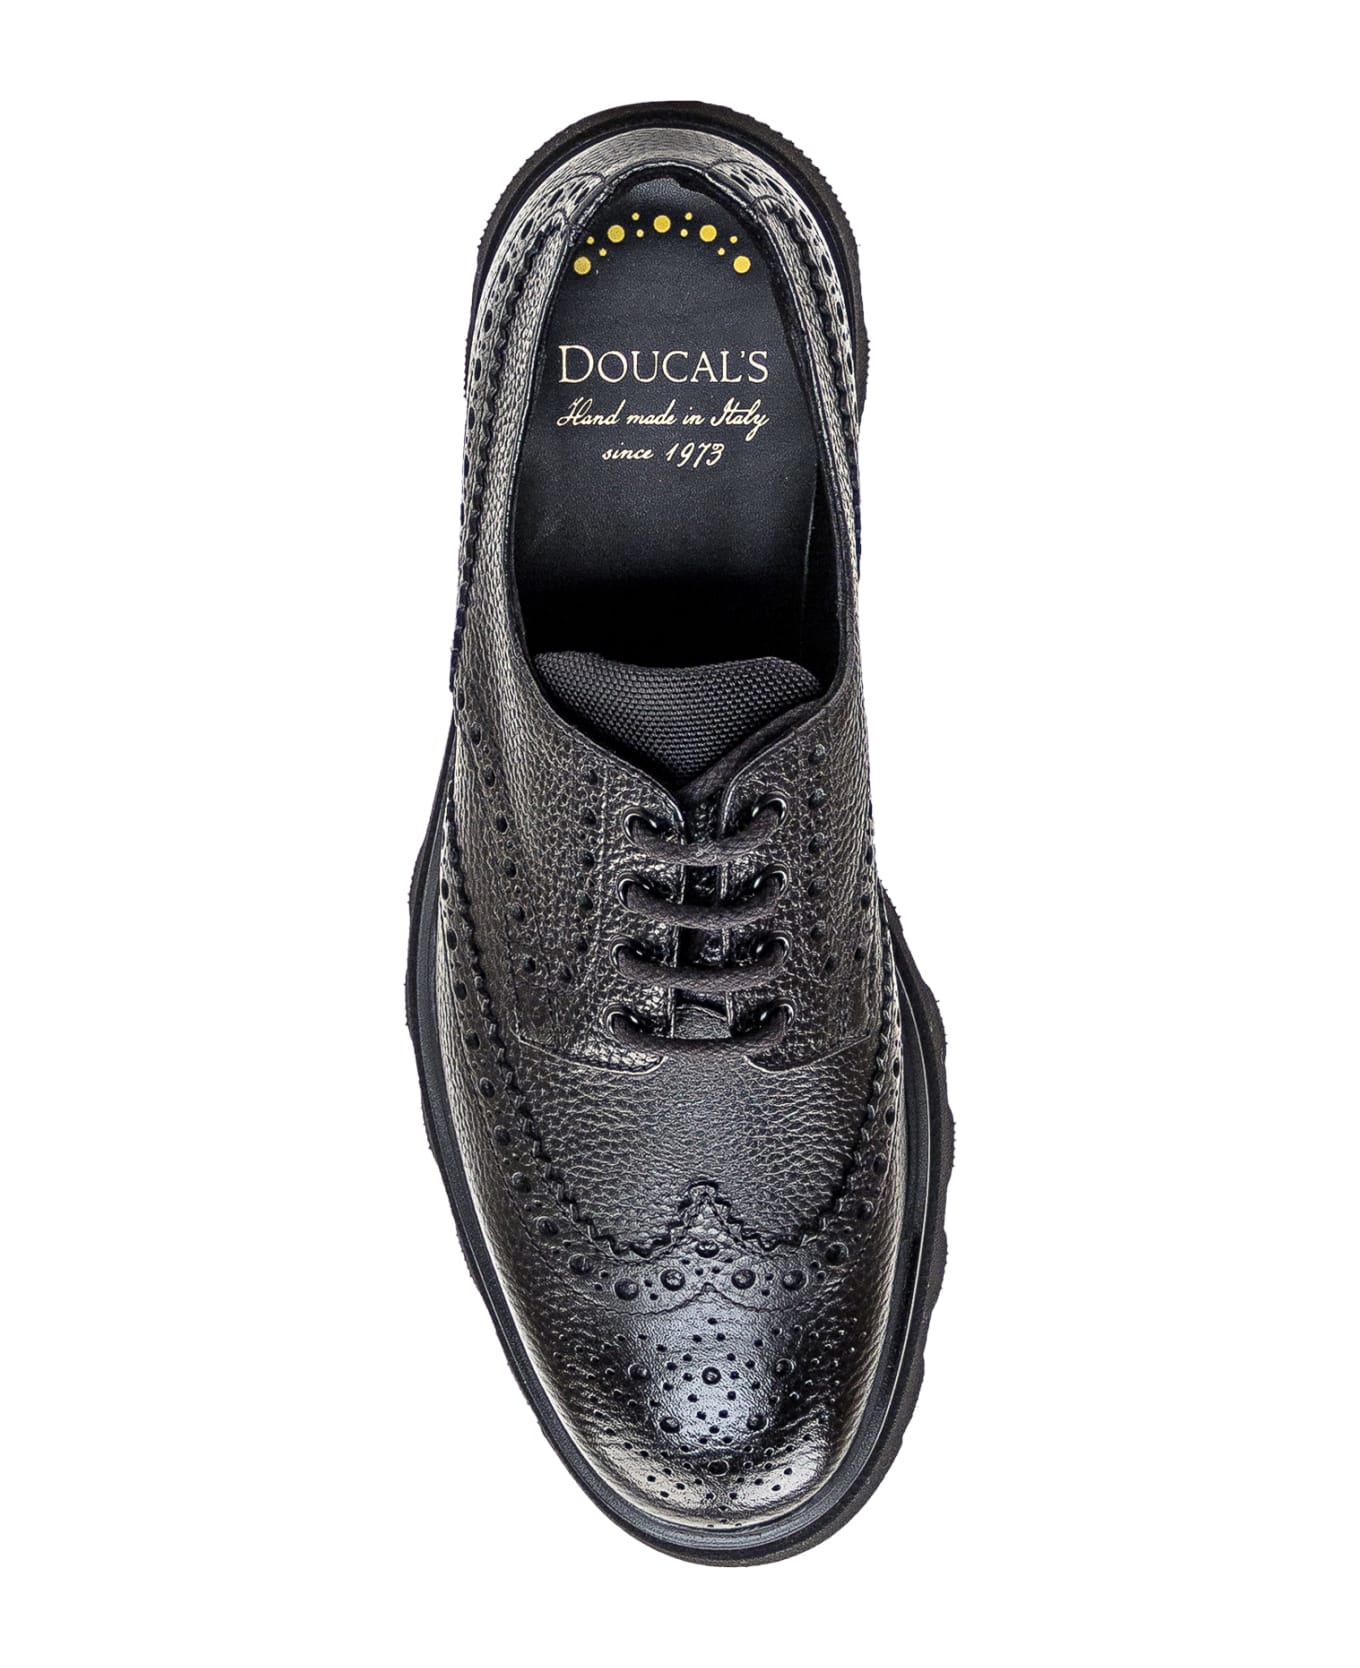 Doucal's Lace-up Shoe - Black